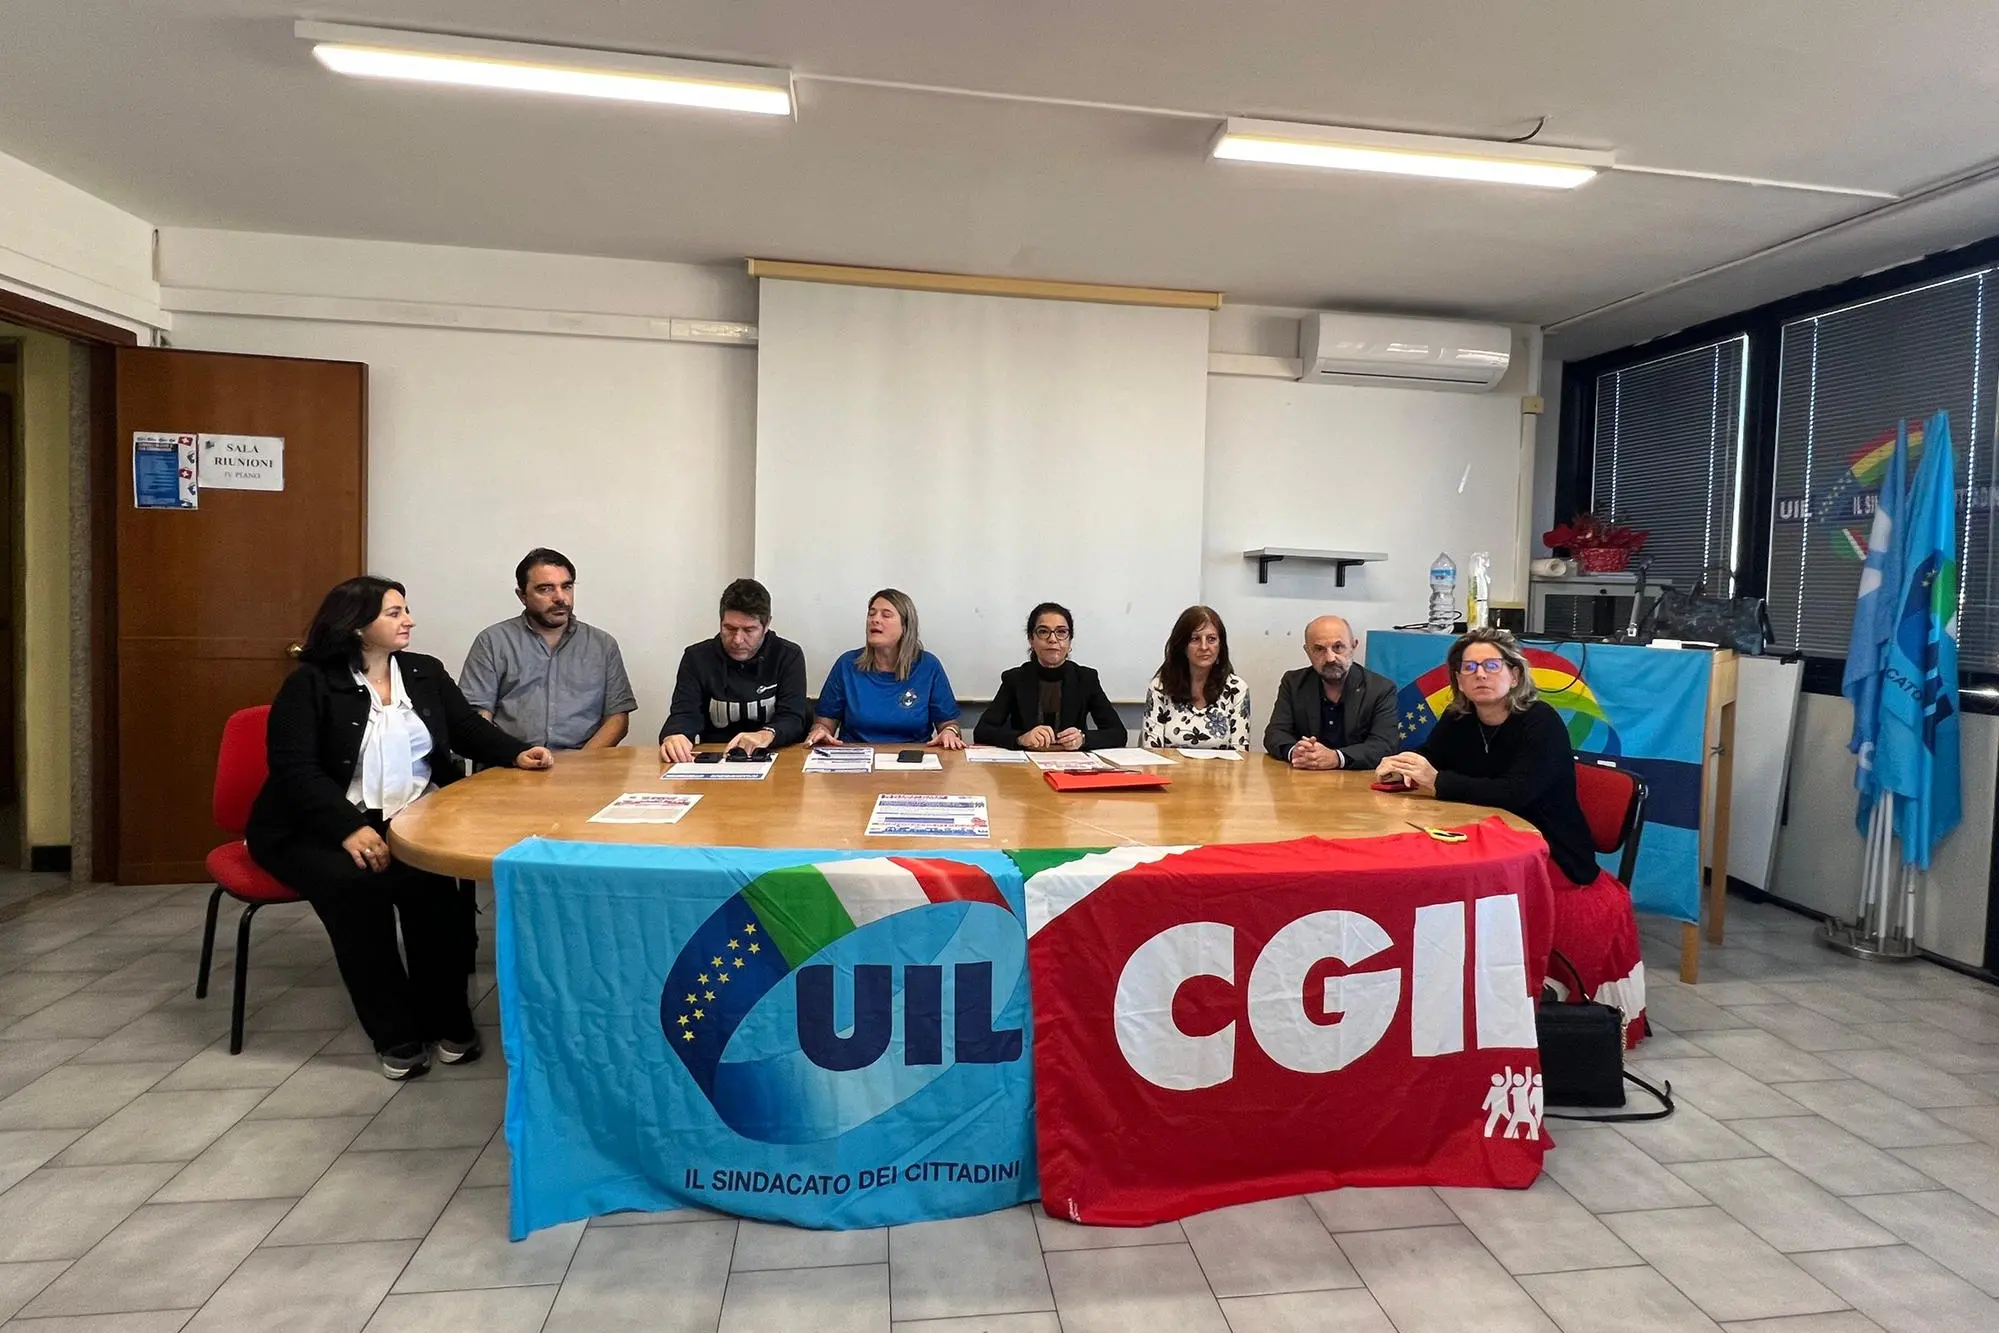 La riunione nella sede regionale della Uil, in via Po a Cagliari (foto Melis)